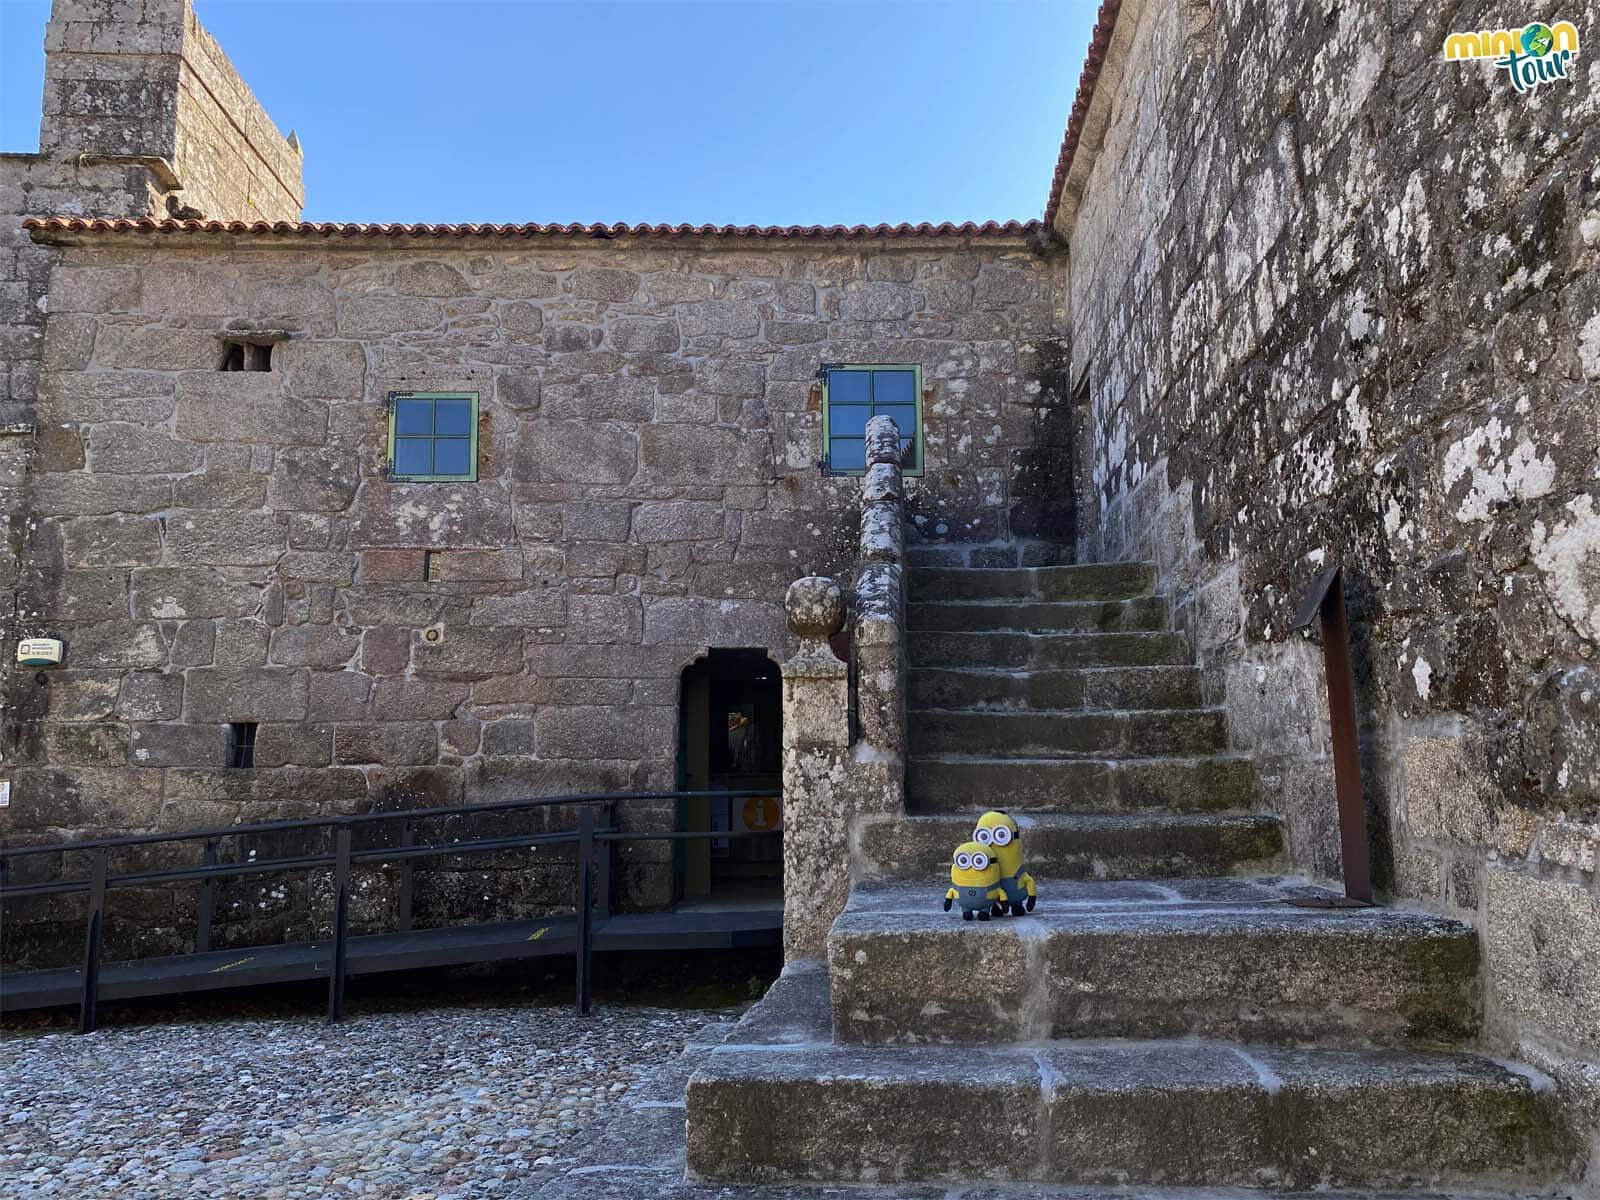 Vamos a visitar las viviendas del Castillo de Vimianzo